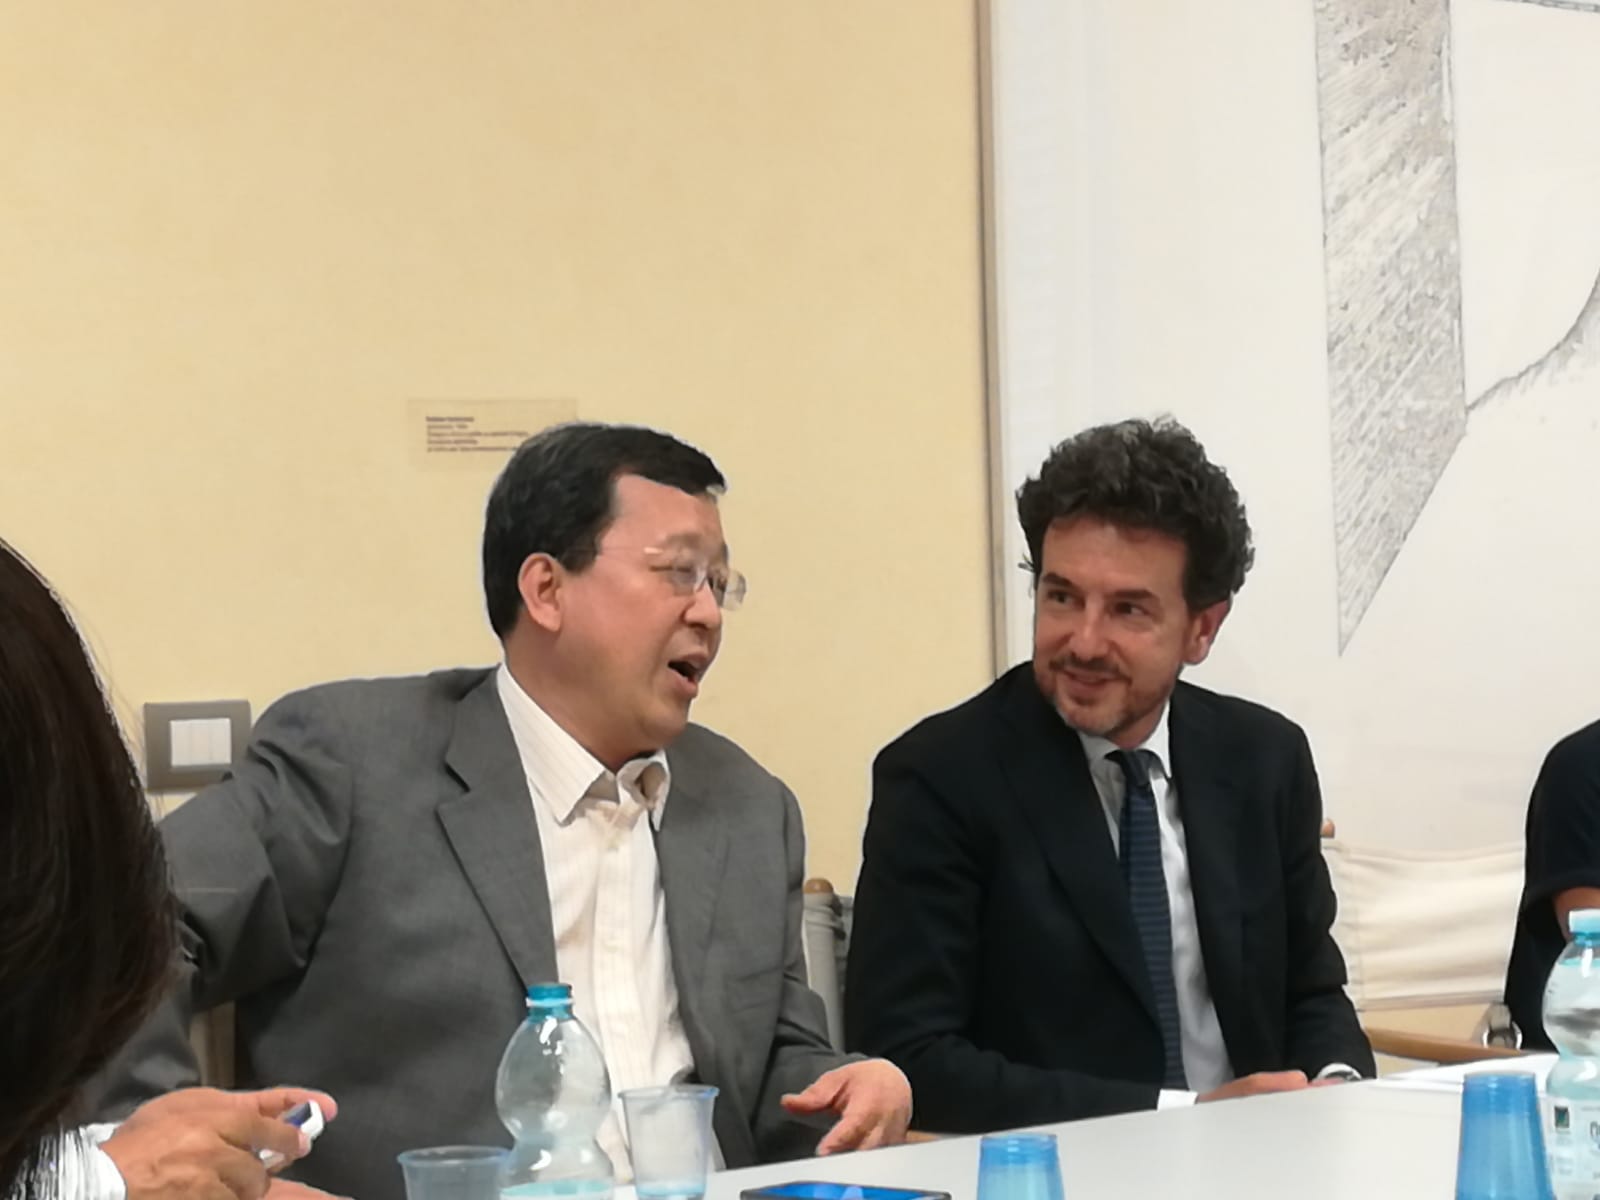 Il Vice Presidente di CCTV, Tang Shiding, in dialogo col Direttore di Toscana Promozione Turistica, Francesco Palumbo.